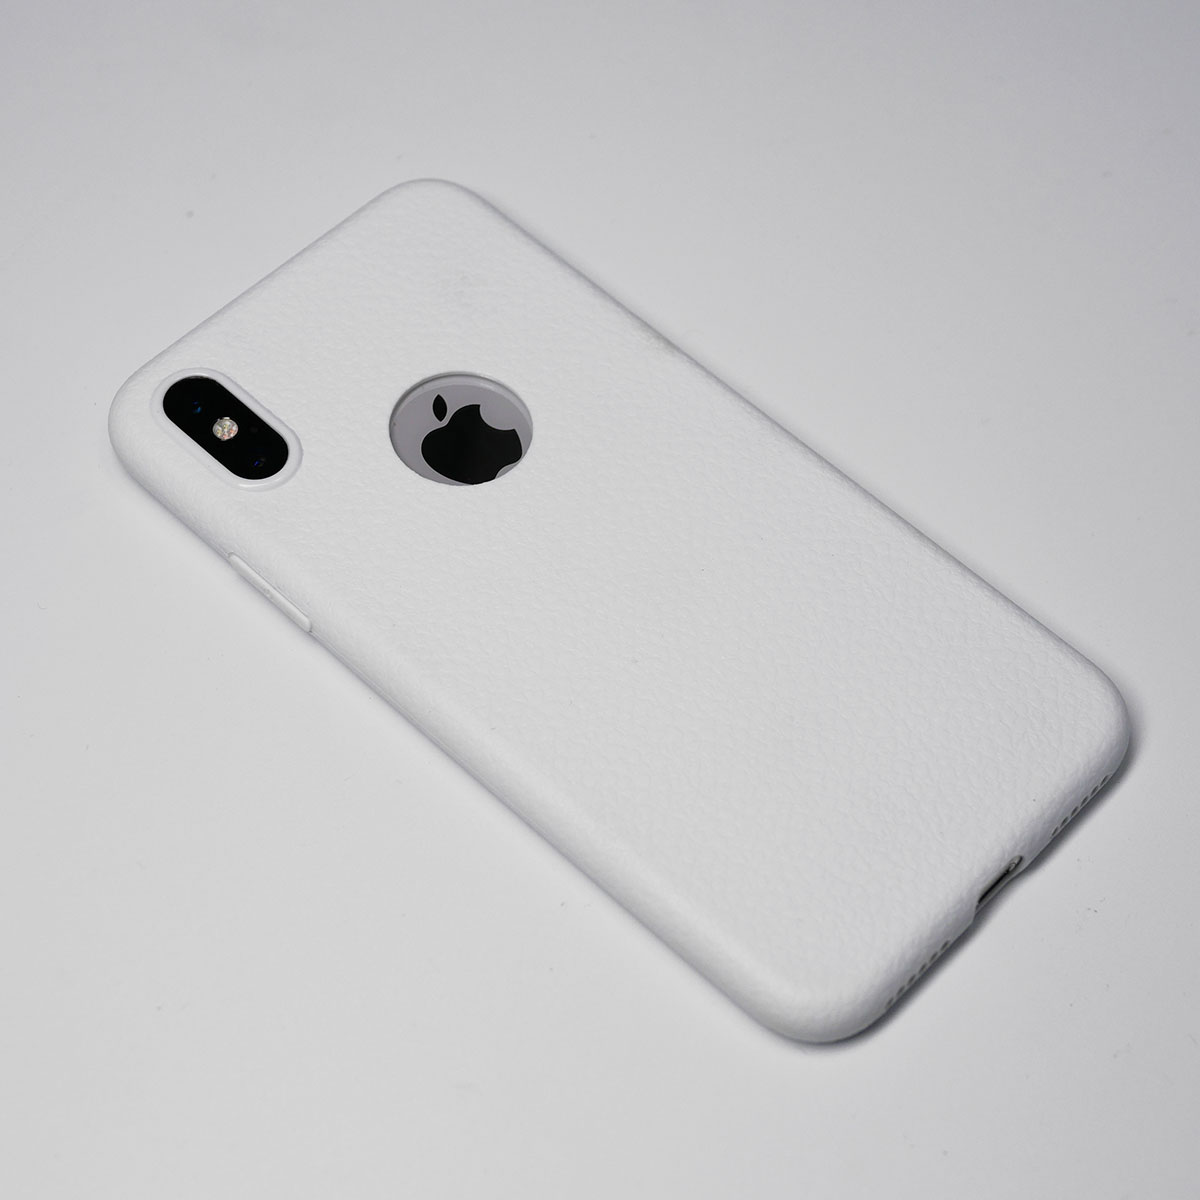 138097 เคส iPhone X สีขาว
